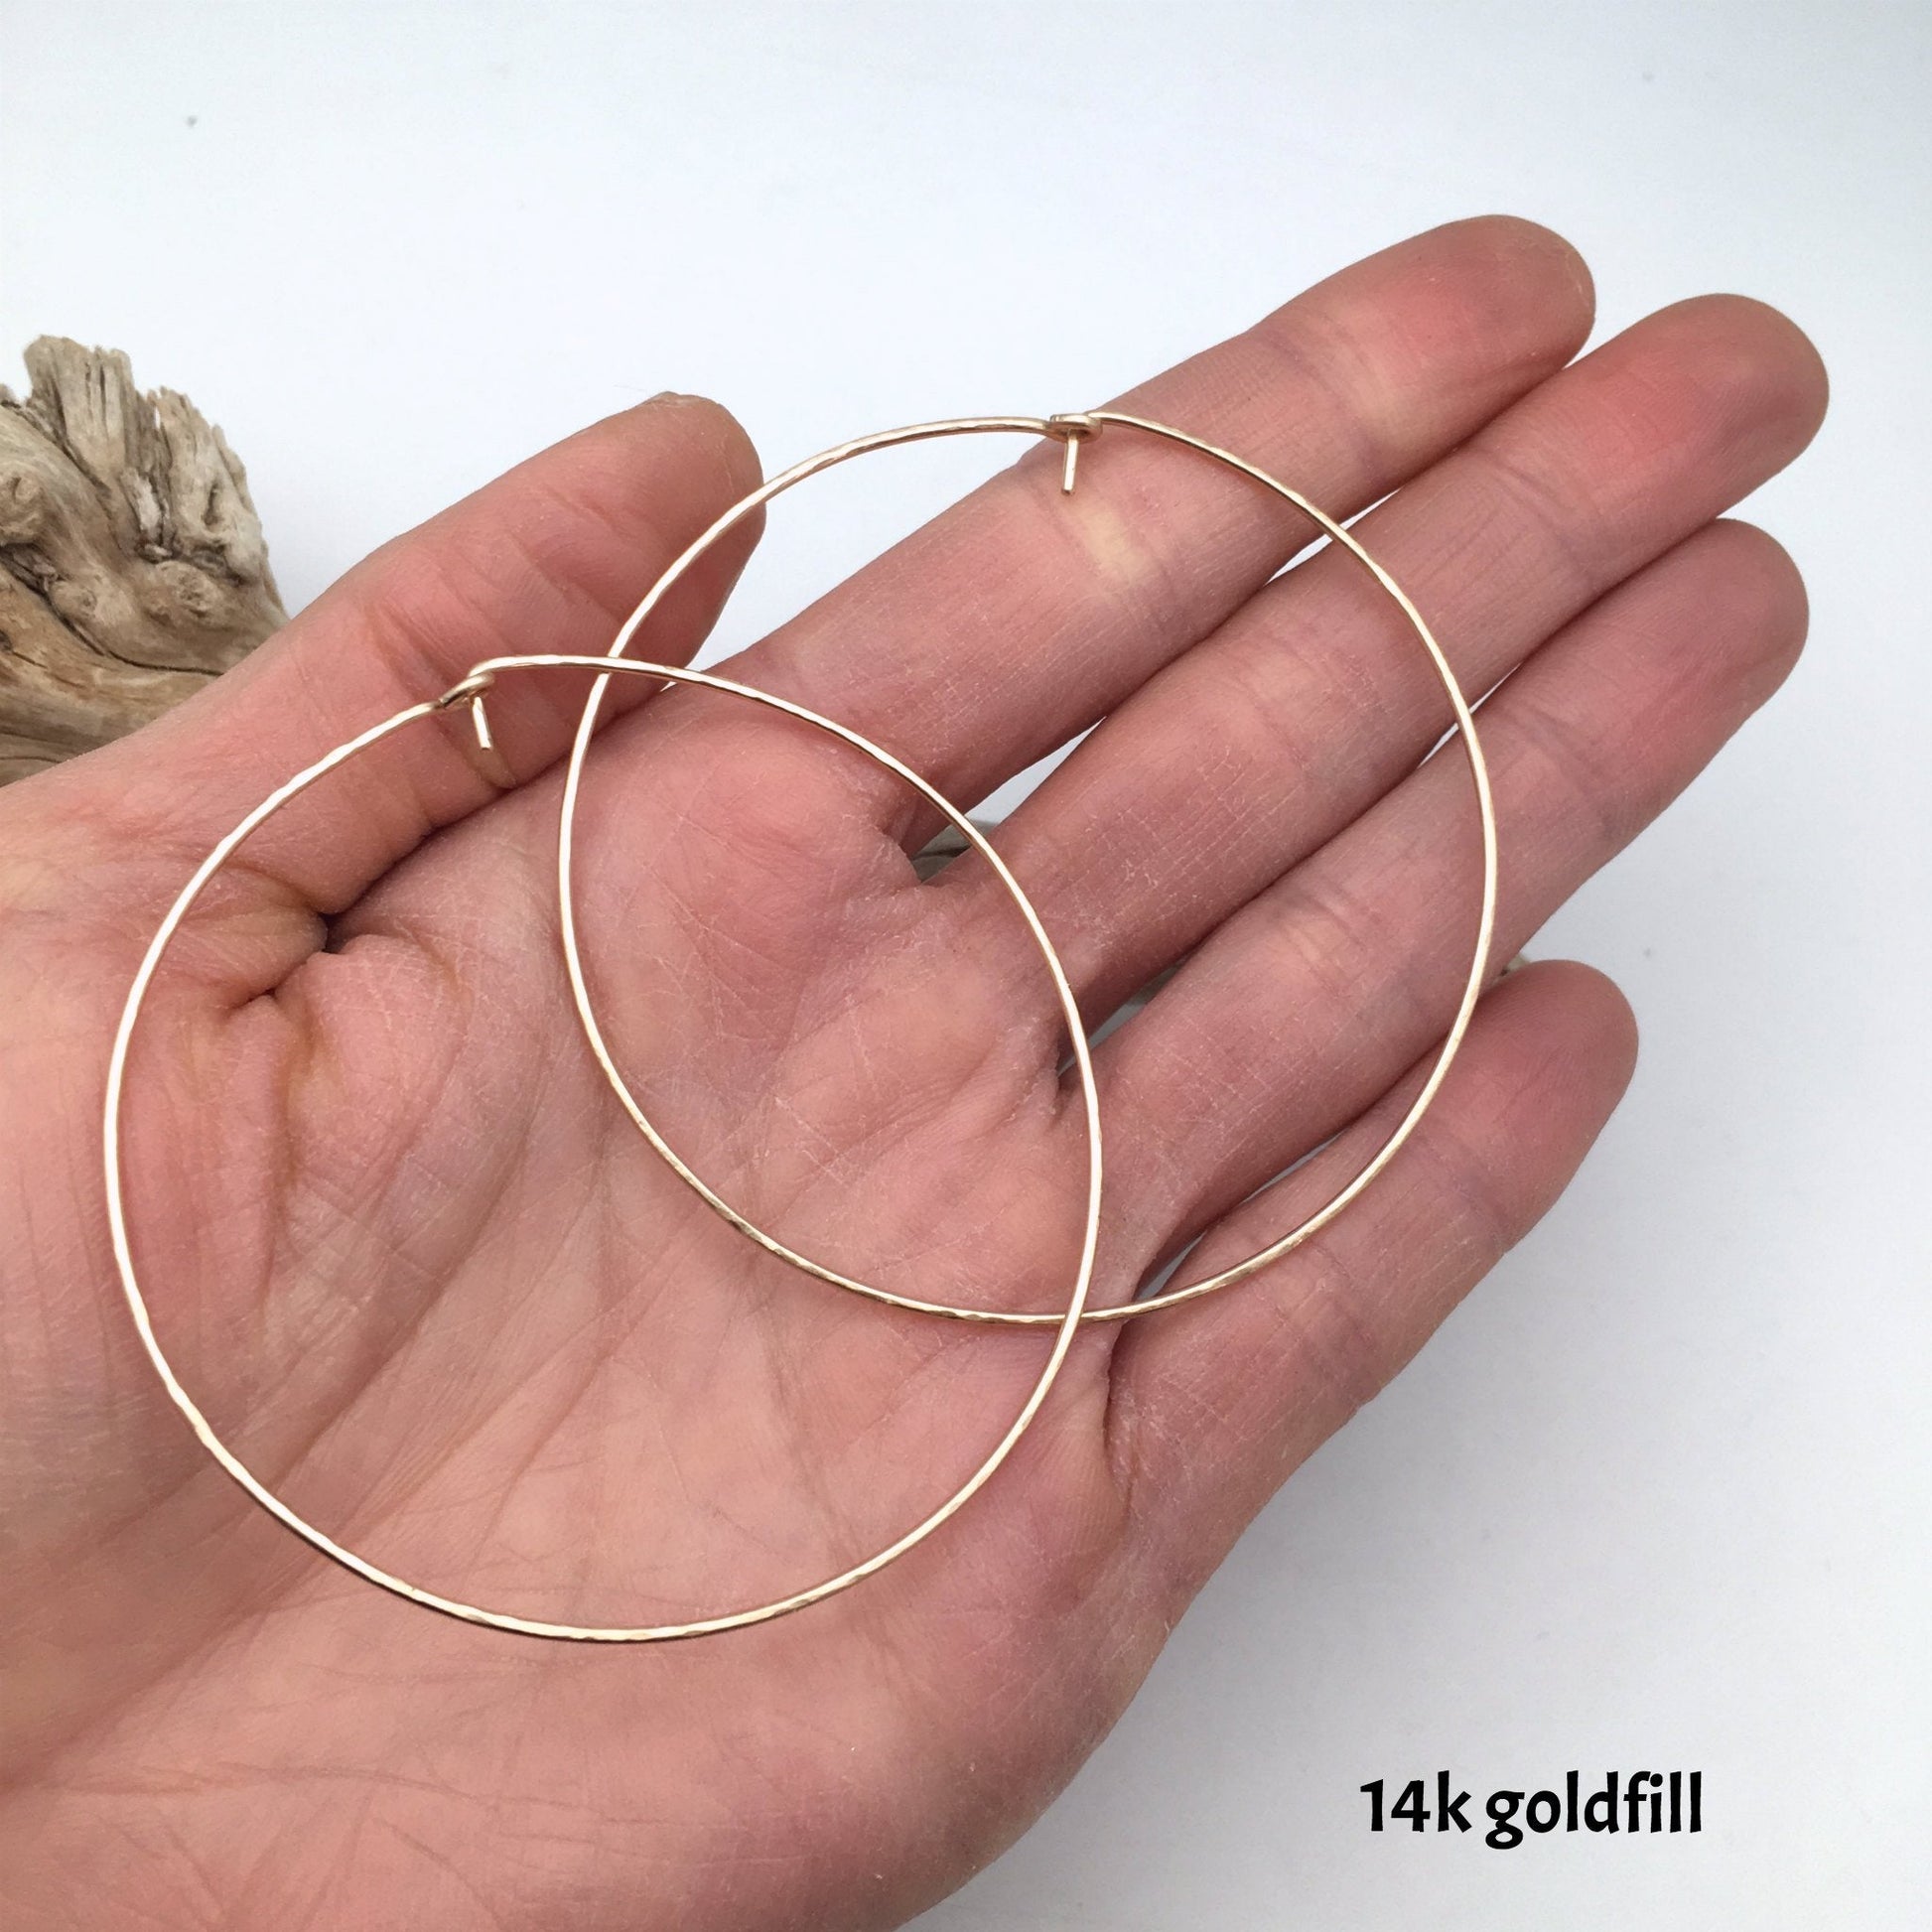 hammered hoop earrings - 3 sizes, silver or 14k goldfill - Lumenrose